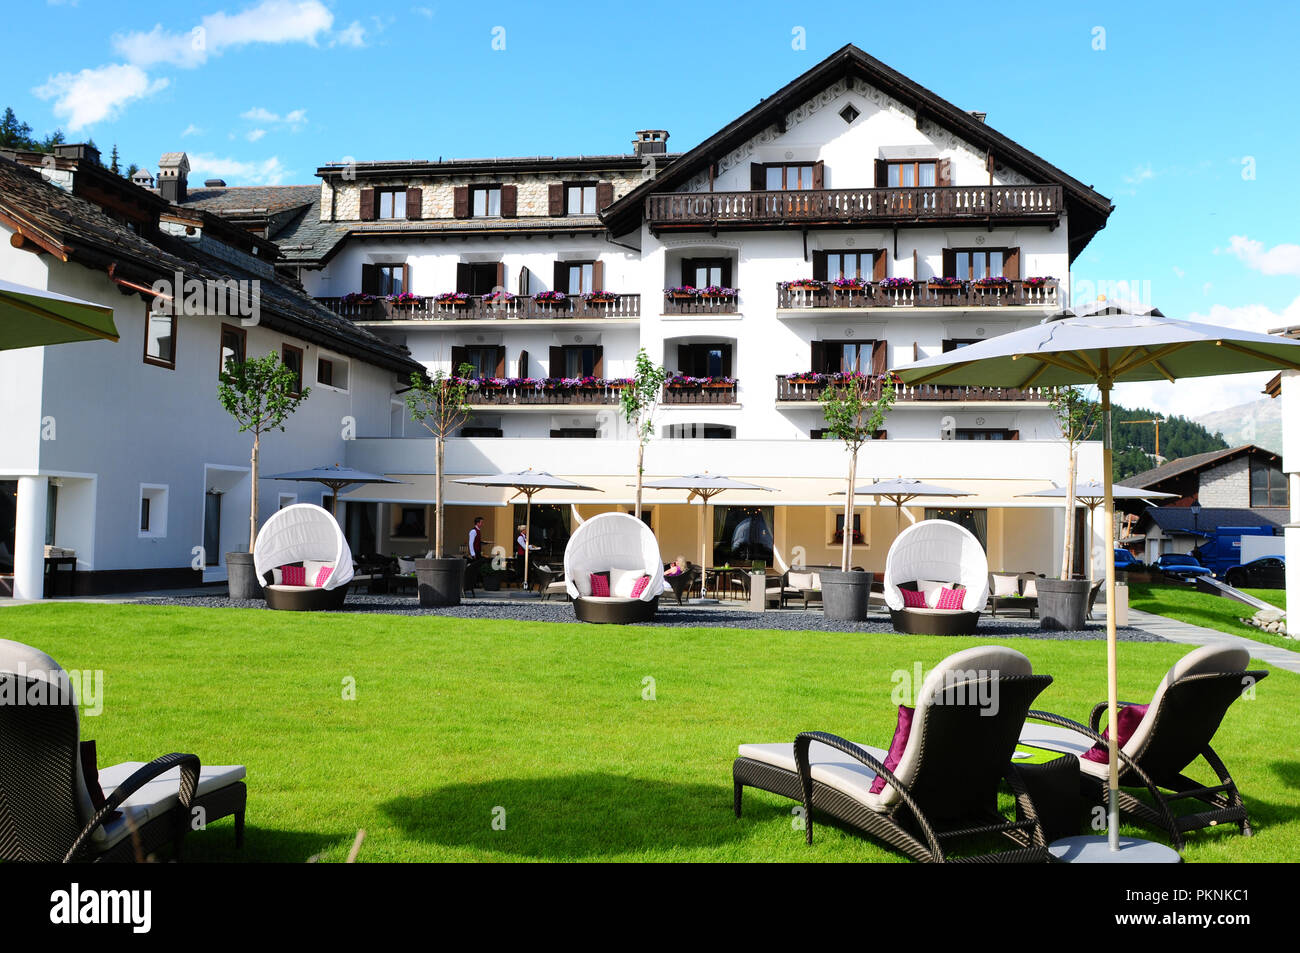 Champfèr/St.Moritz: El Giardino Hotel de Montaña sillas de jardín ofrecen momentos de relax Foto de stock